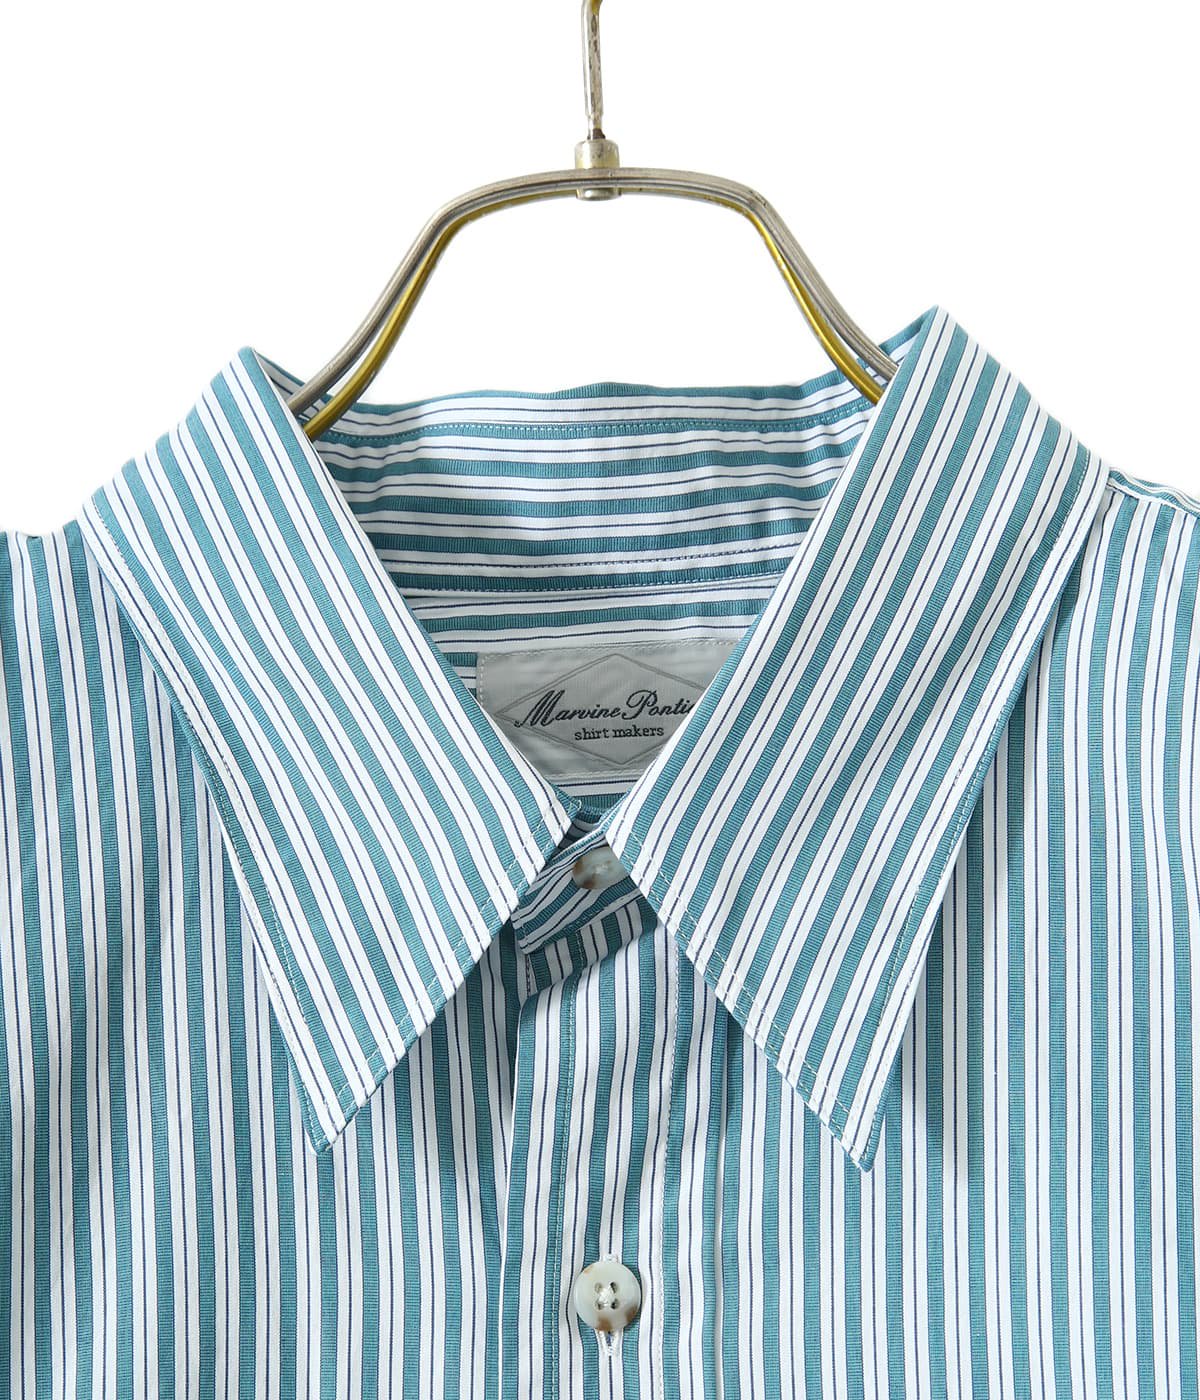 Marvine Pontiak Shirt Makers(マービンポンティアックシャツメーカーズ) Regular Collar 3